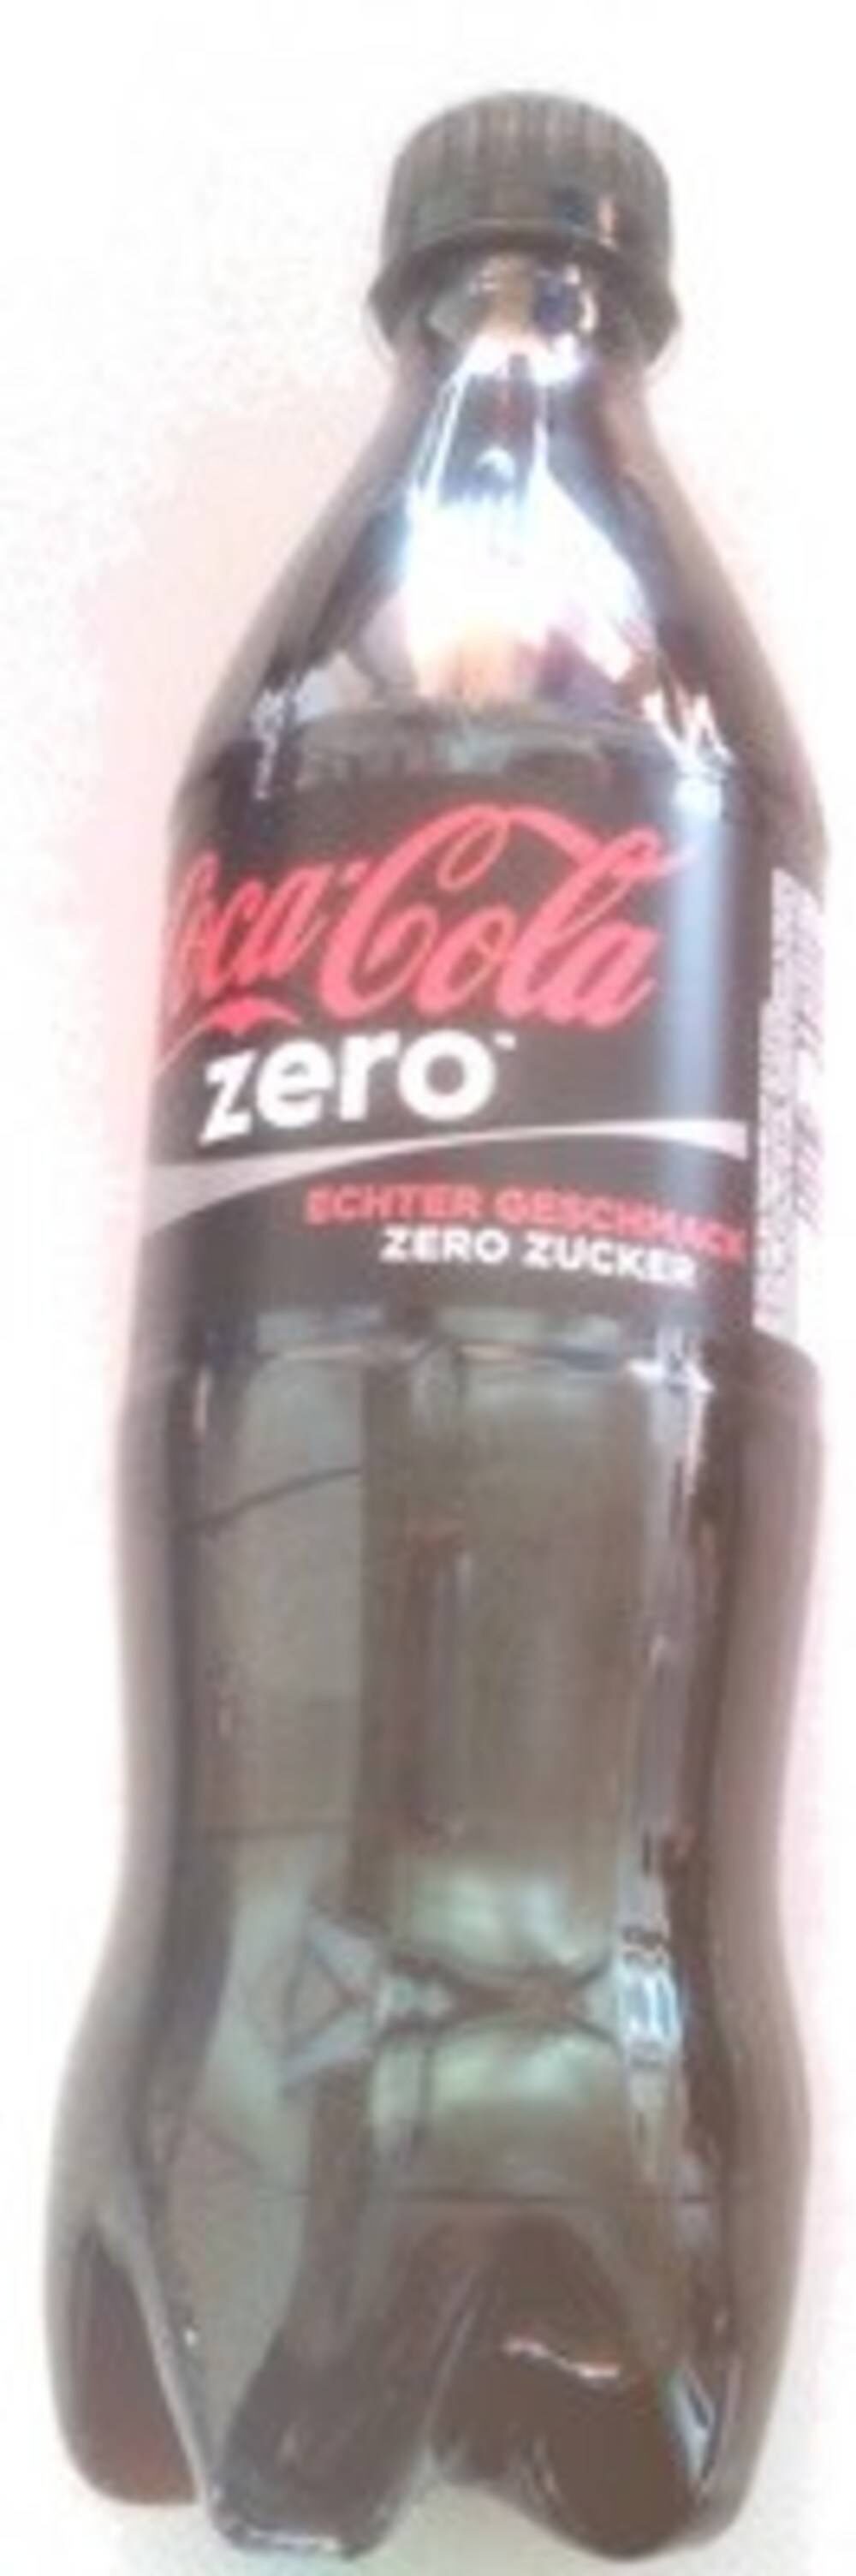 Coca Cola Zero 0.5 - Product - en